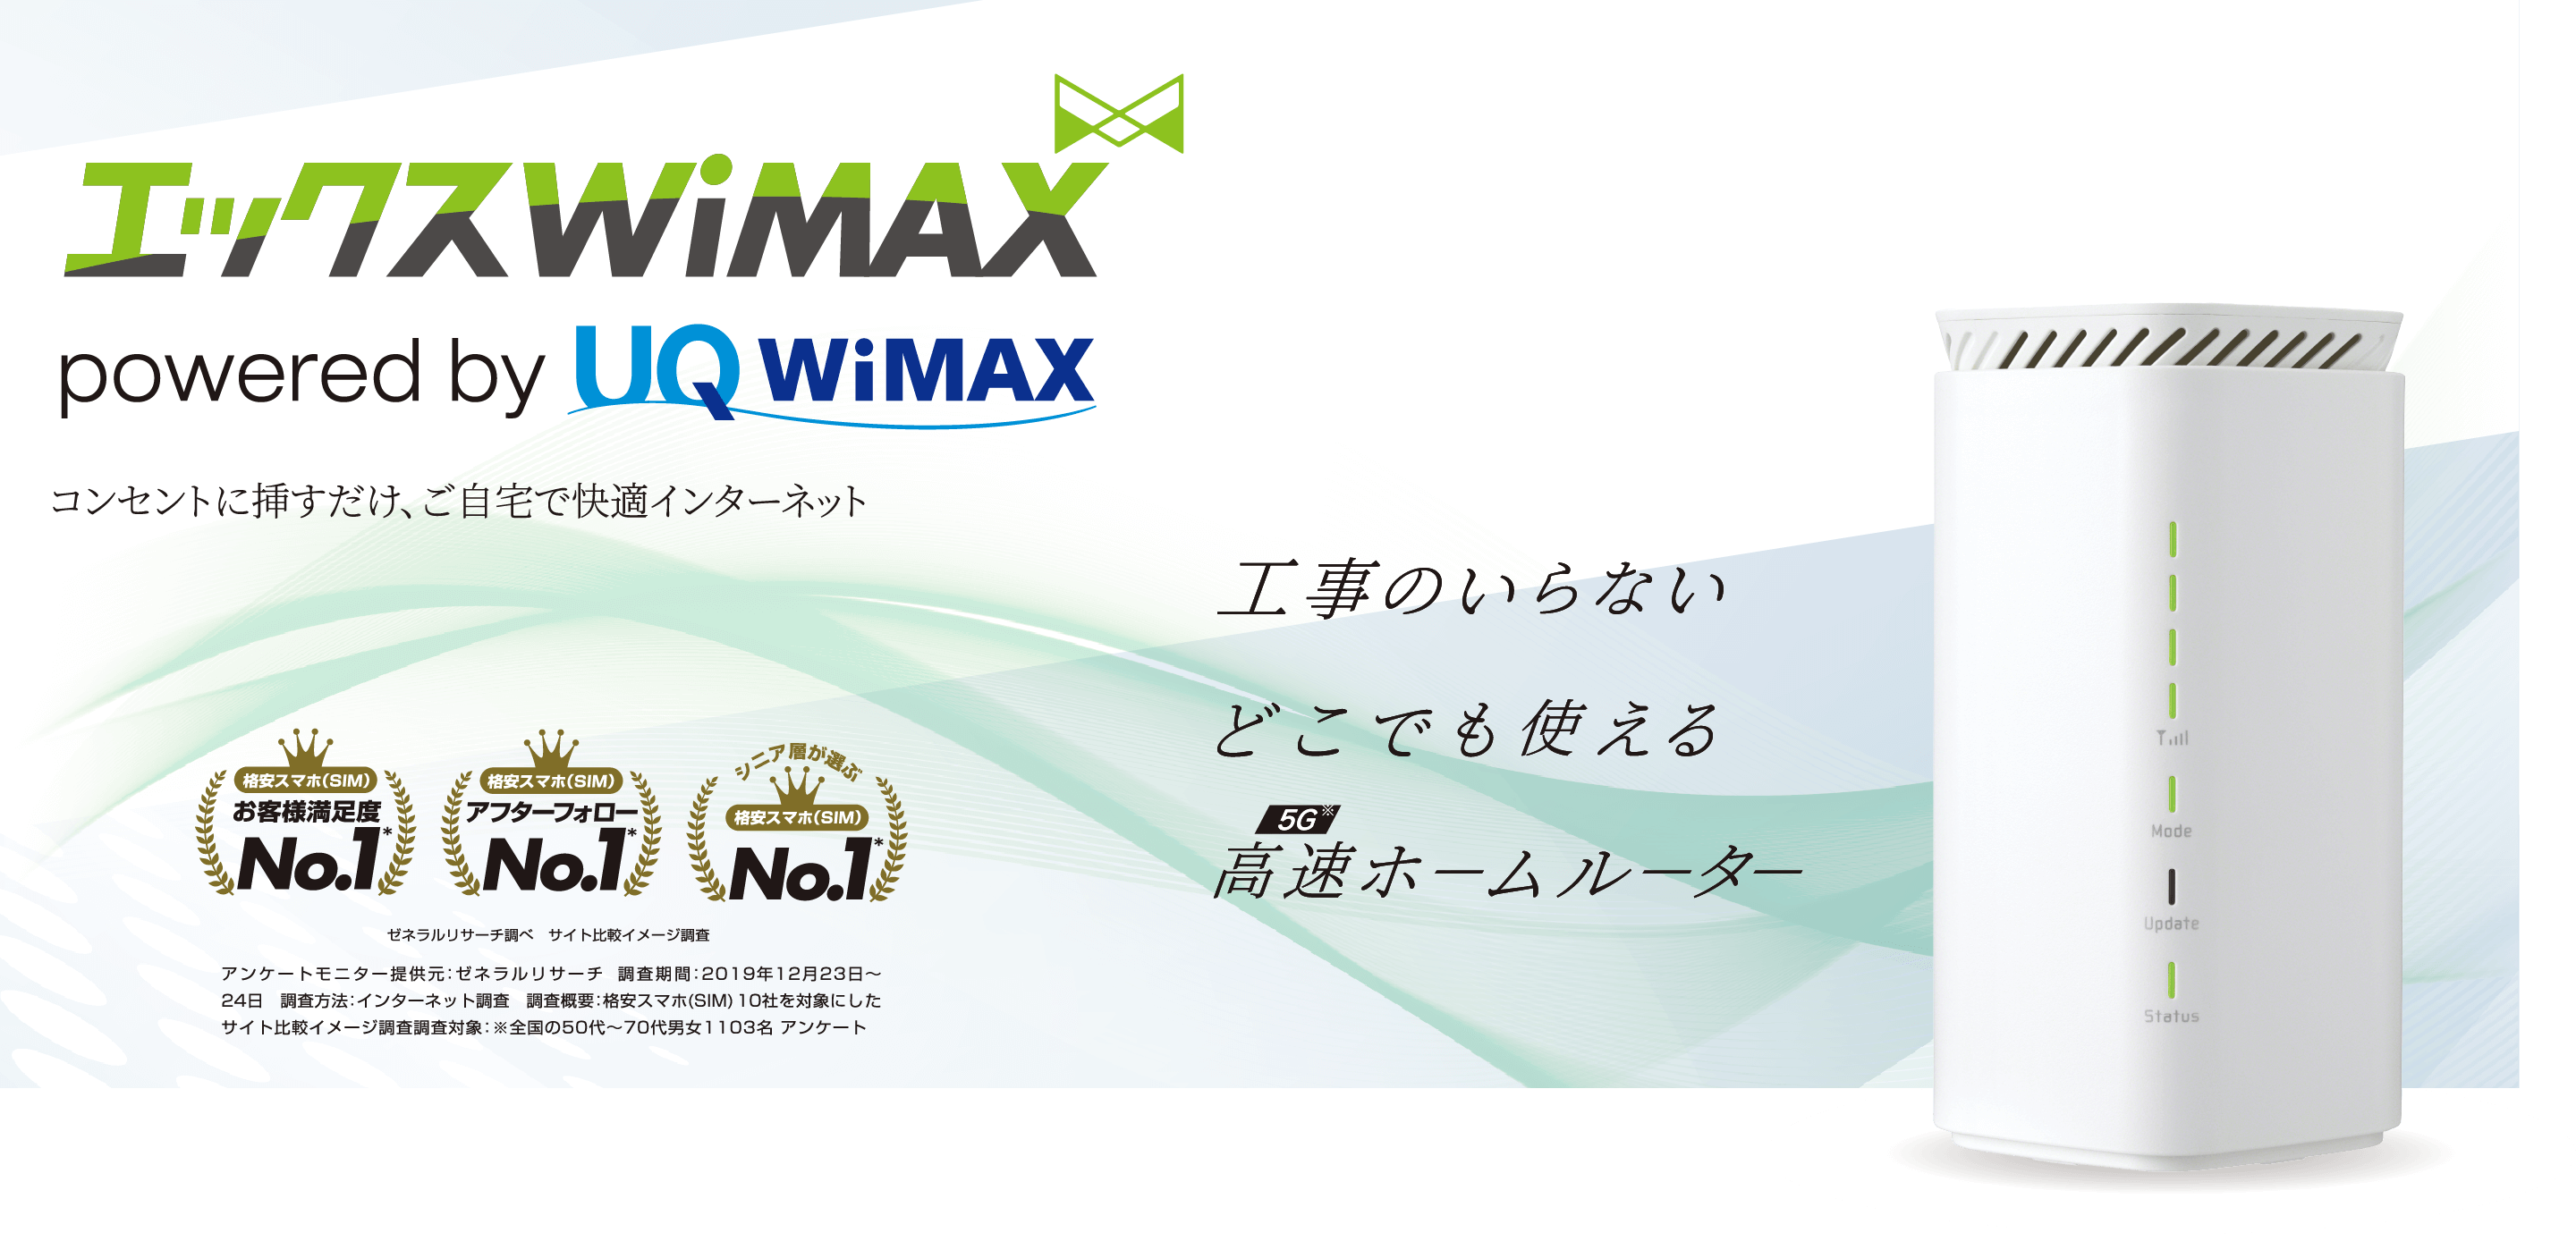 エックスWiMAX - L12 | Xmobile